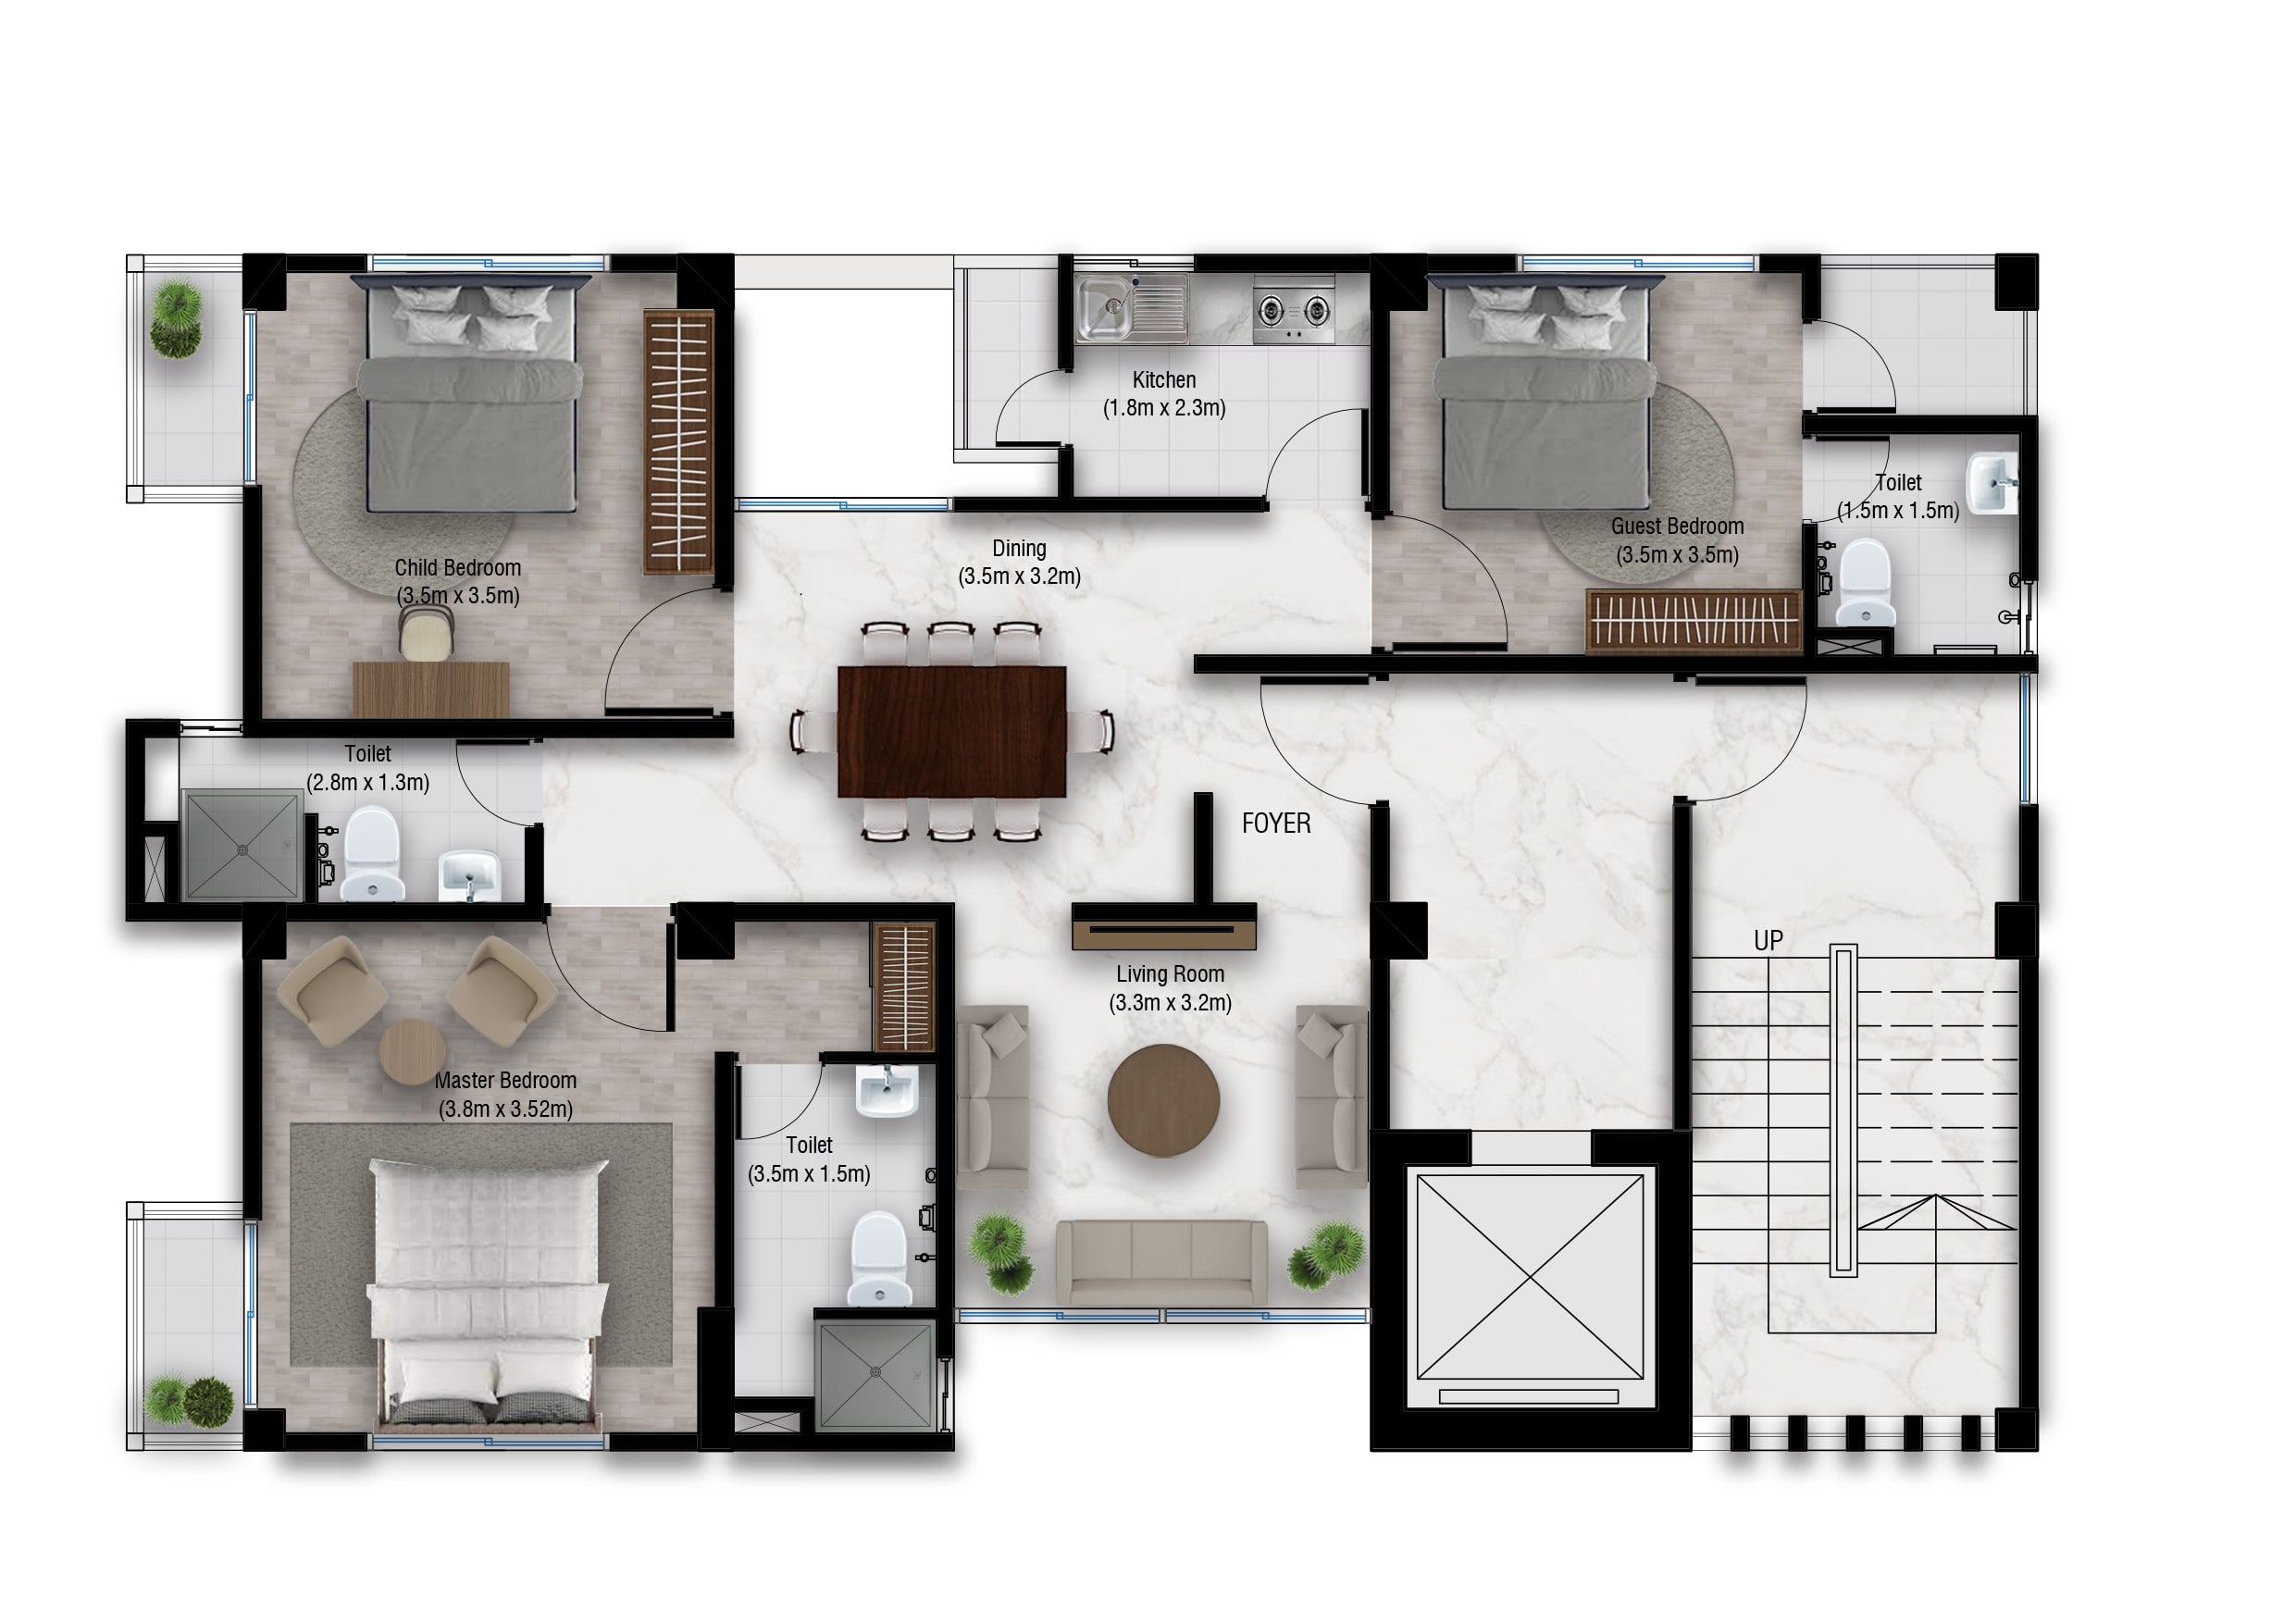 Render Professional 2d Floor Plans In